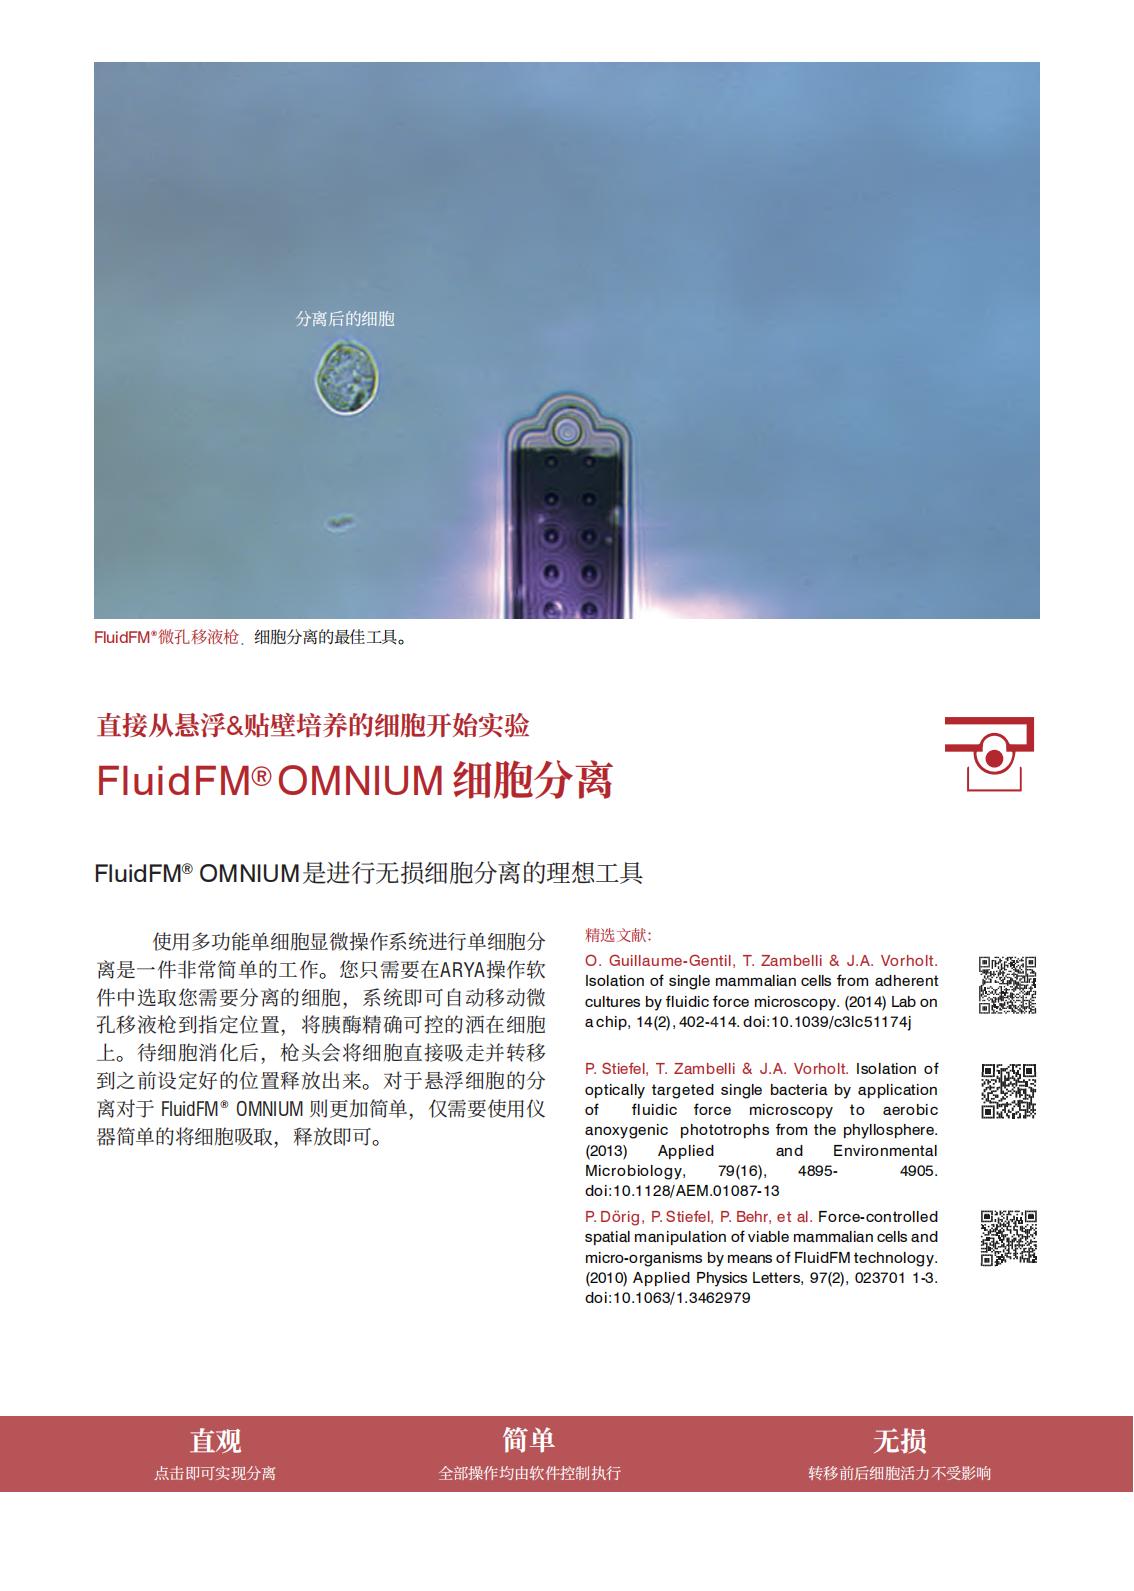 多功能单细胞显微操作系统FluidFM_OMNIUM(图8)